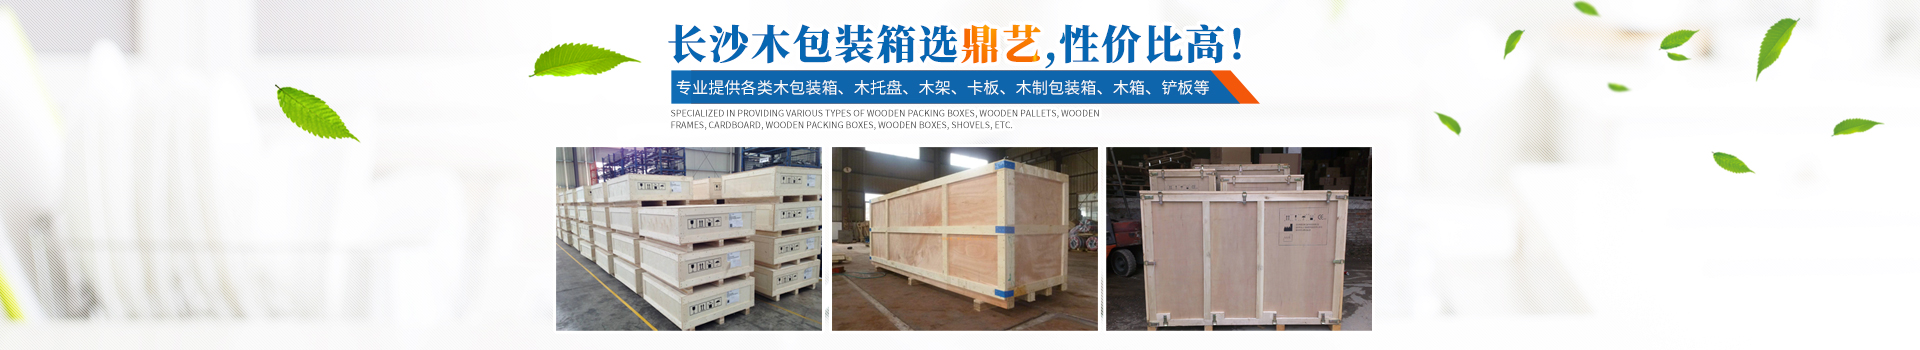 湖南鼎艺木制品有限公司_长沙木包装箱生产销售|长沙木托盘生产销售